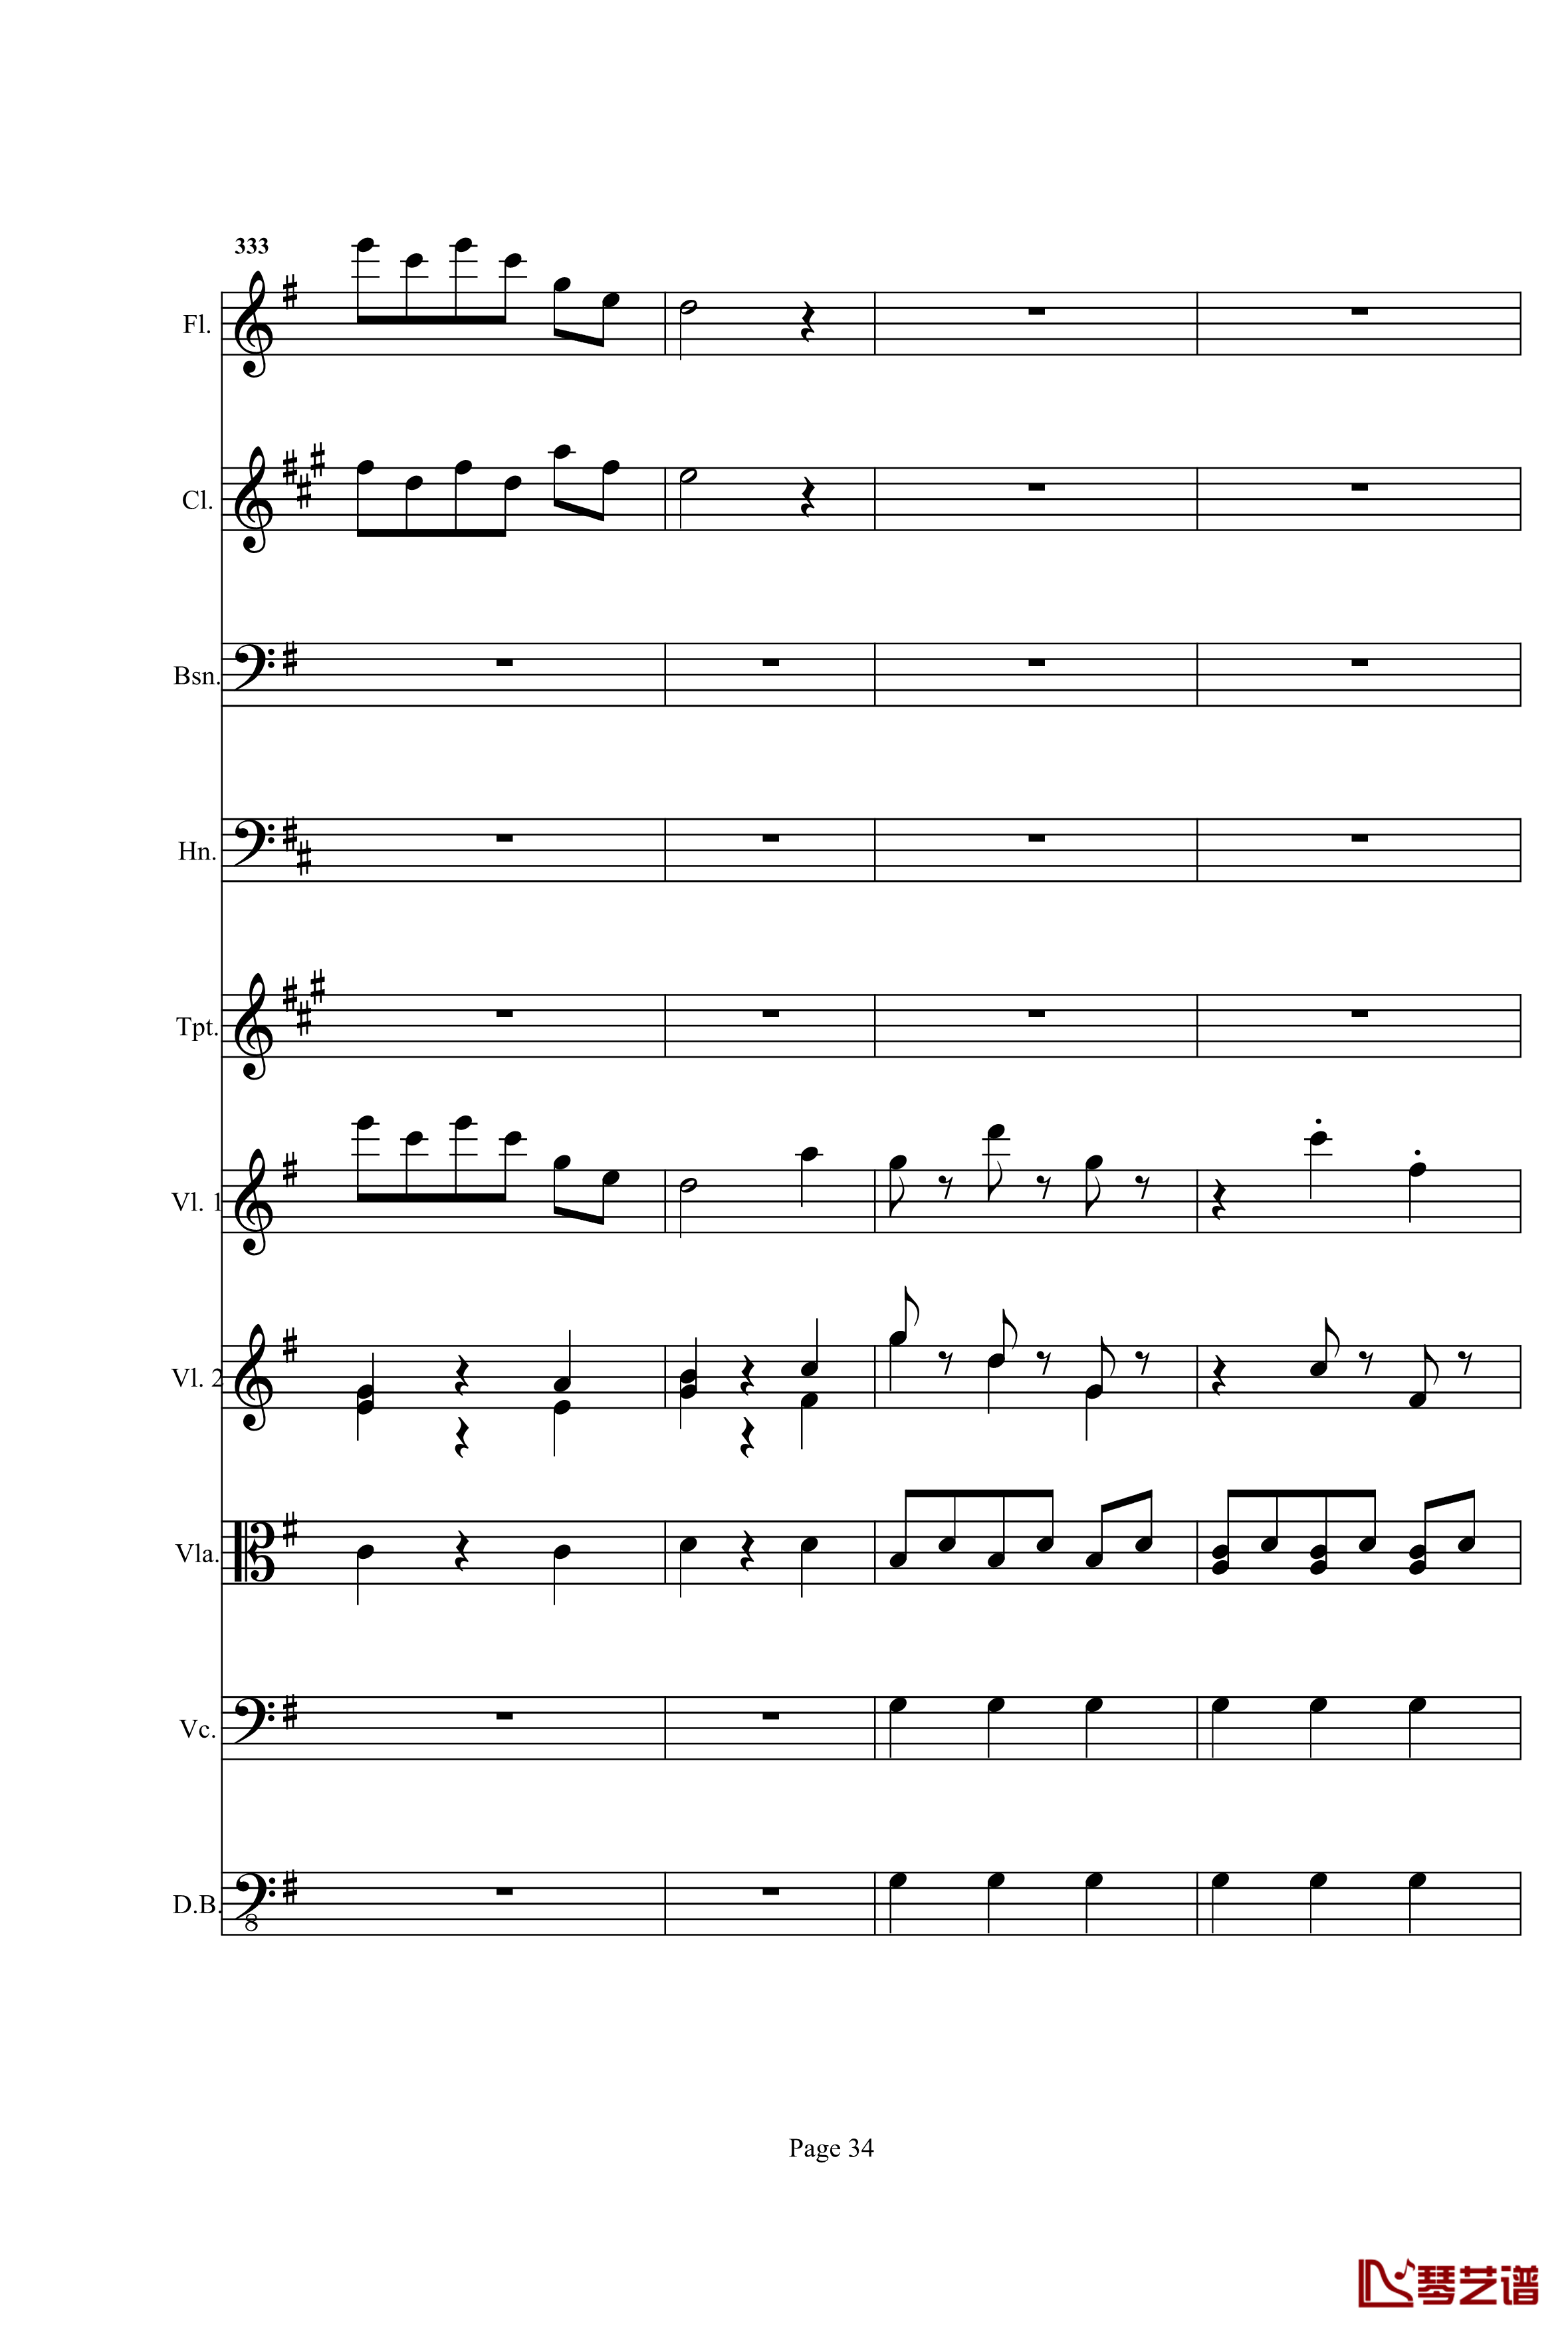 奏鸣曲之交响钢琴谱-第25首-Ⅰ-贝多芬-beethoven34